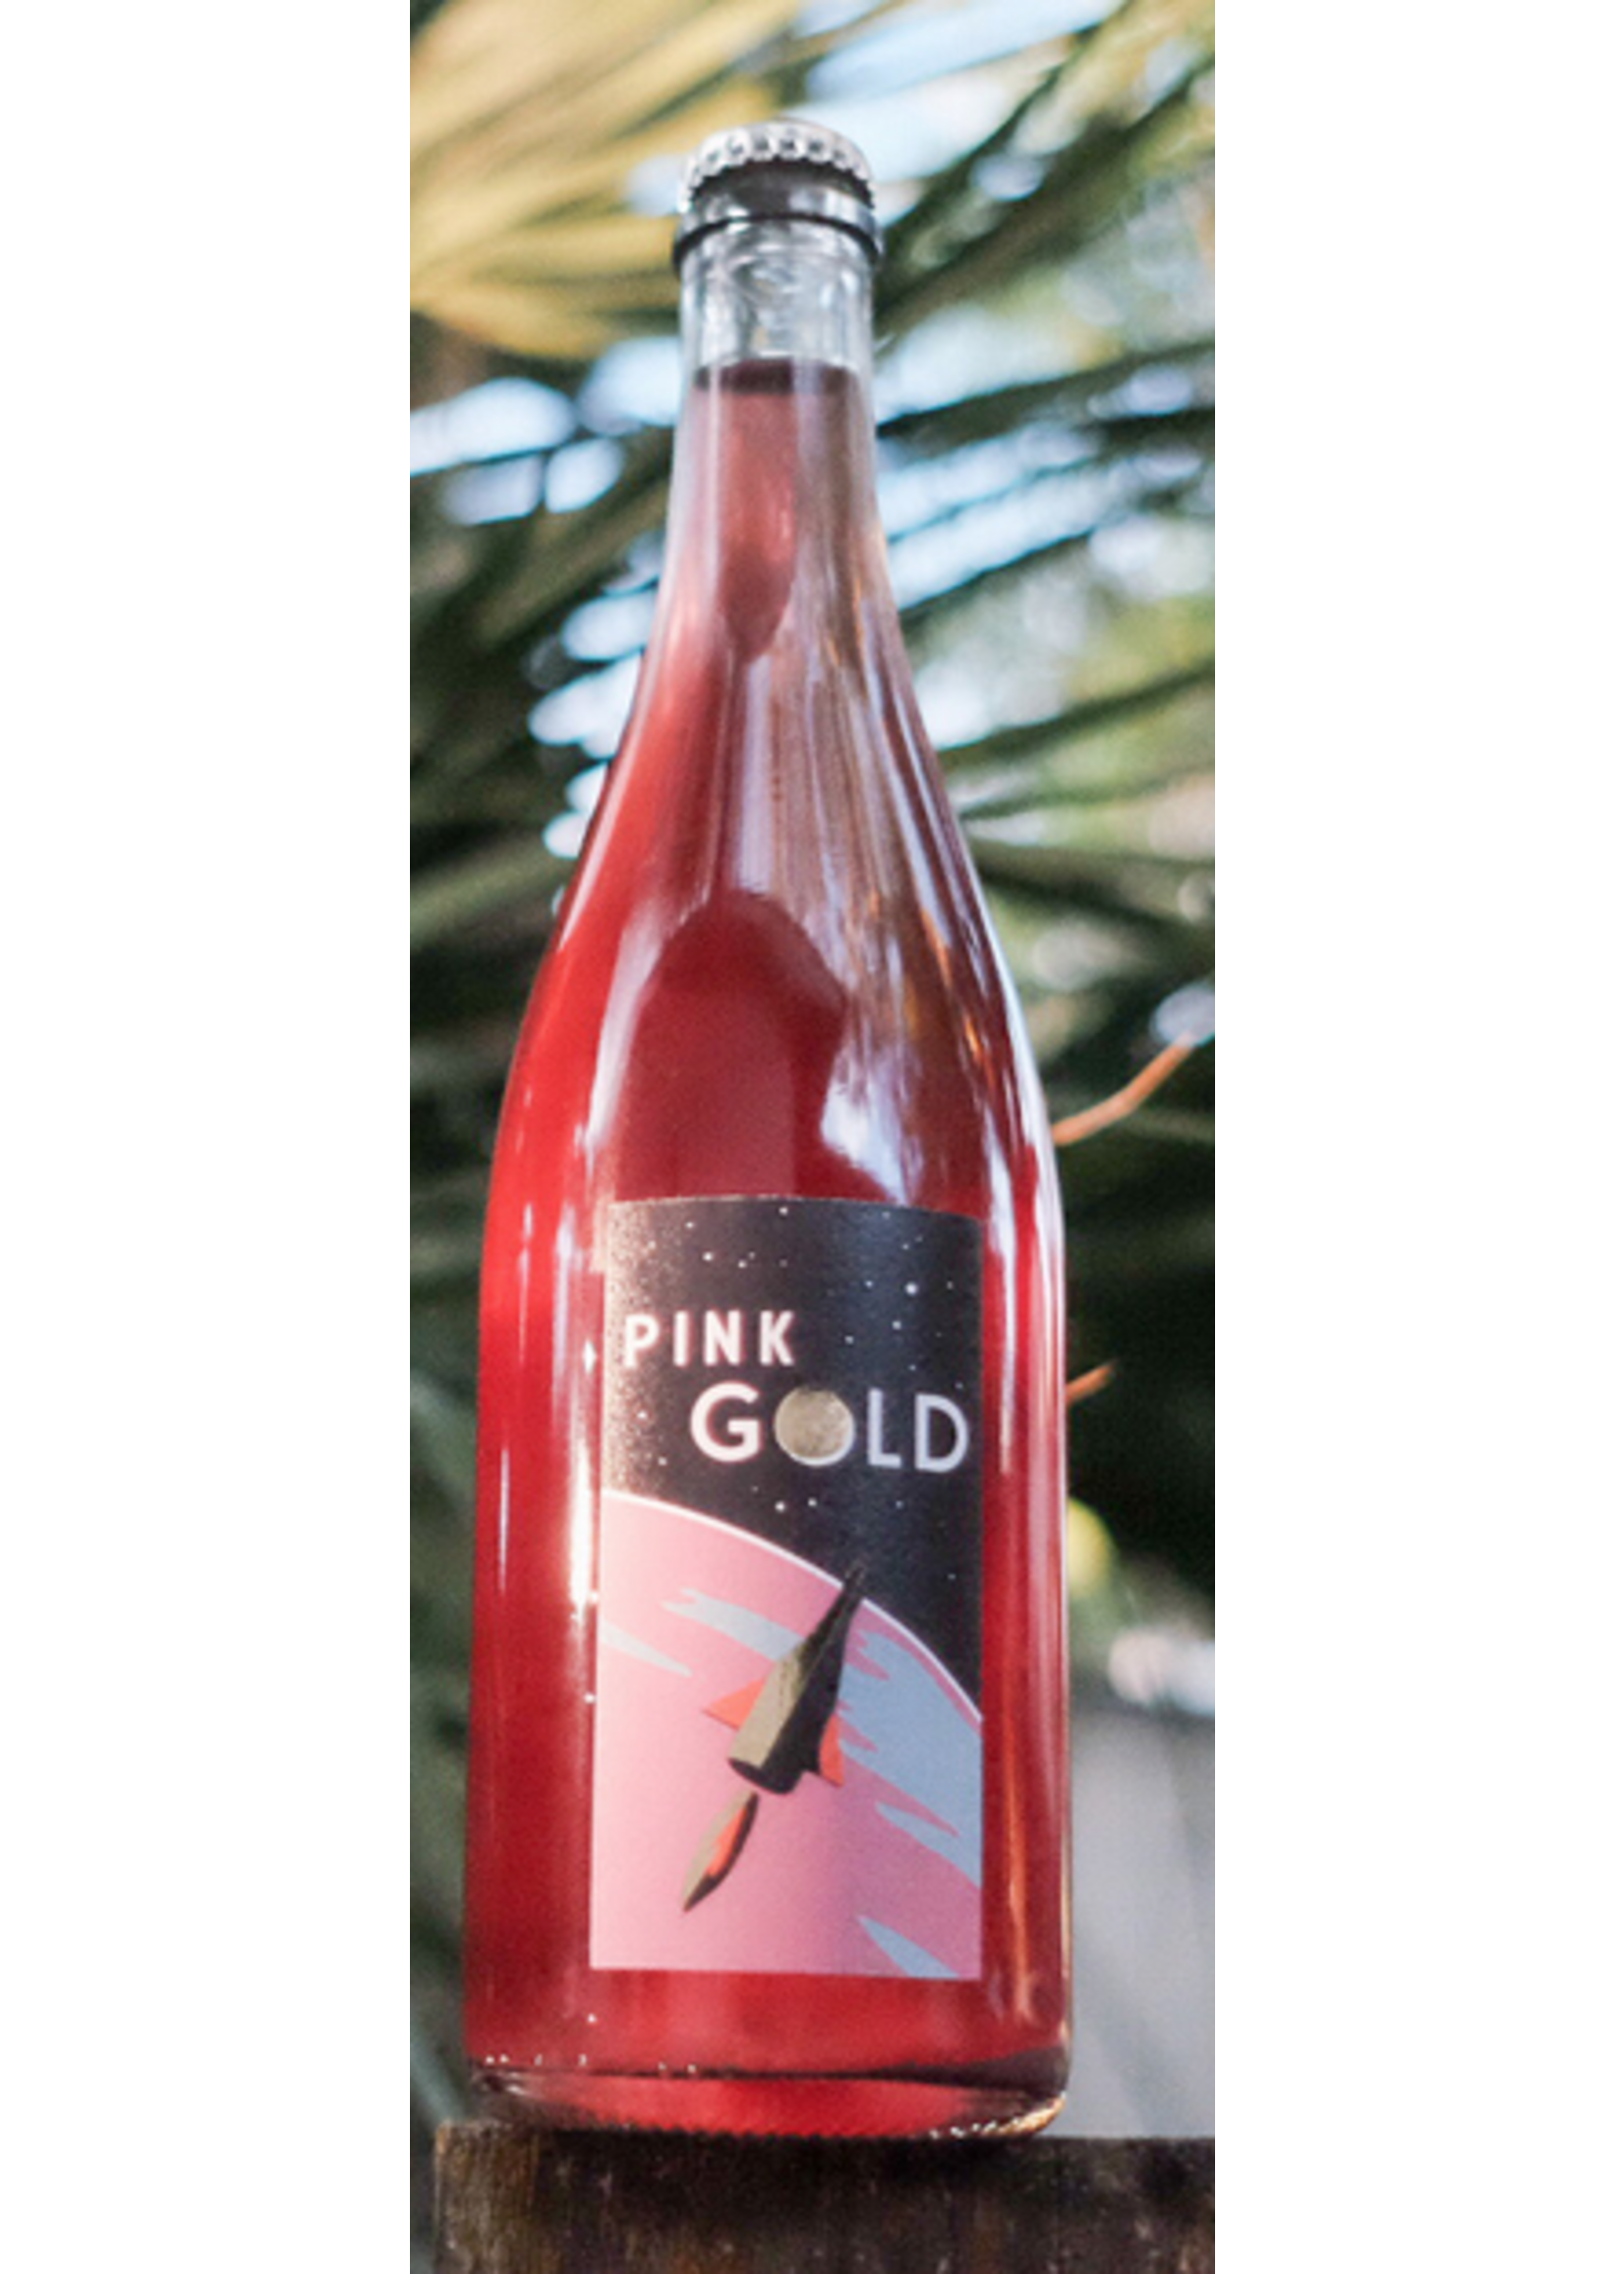 Leon Gold German Sparkling - Leon Gold - Super Glou Pink Gold Pét Nat